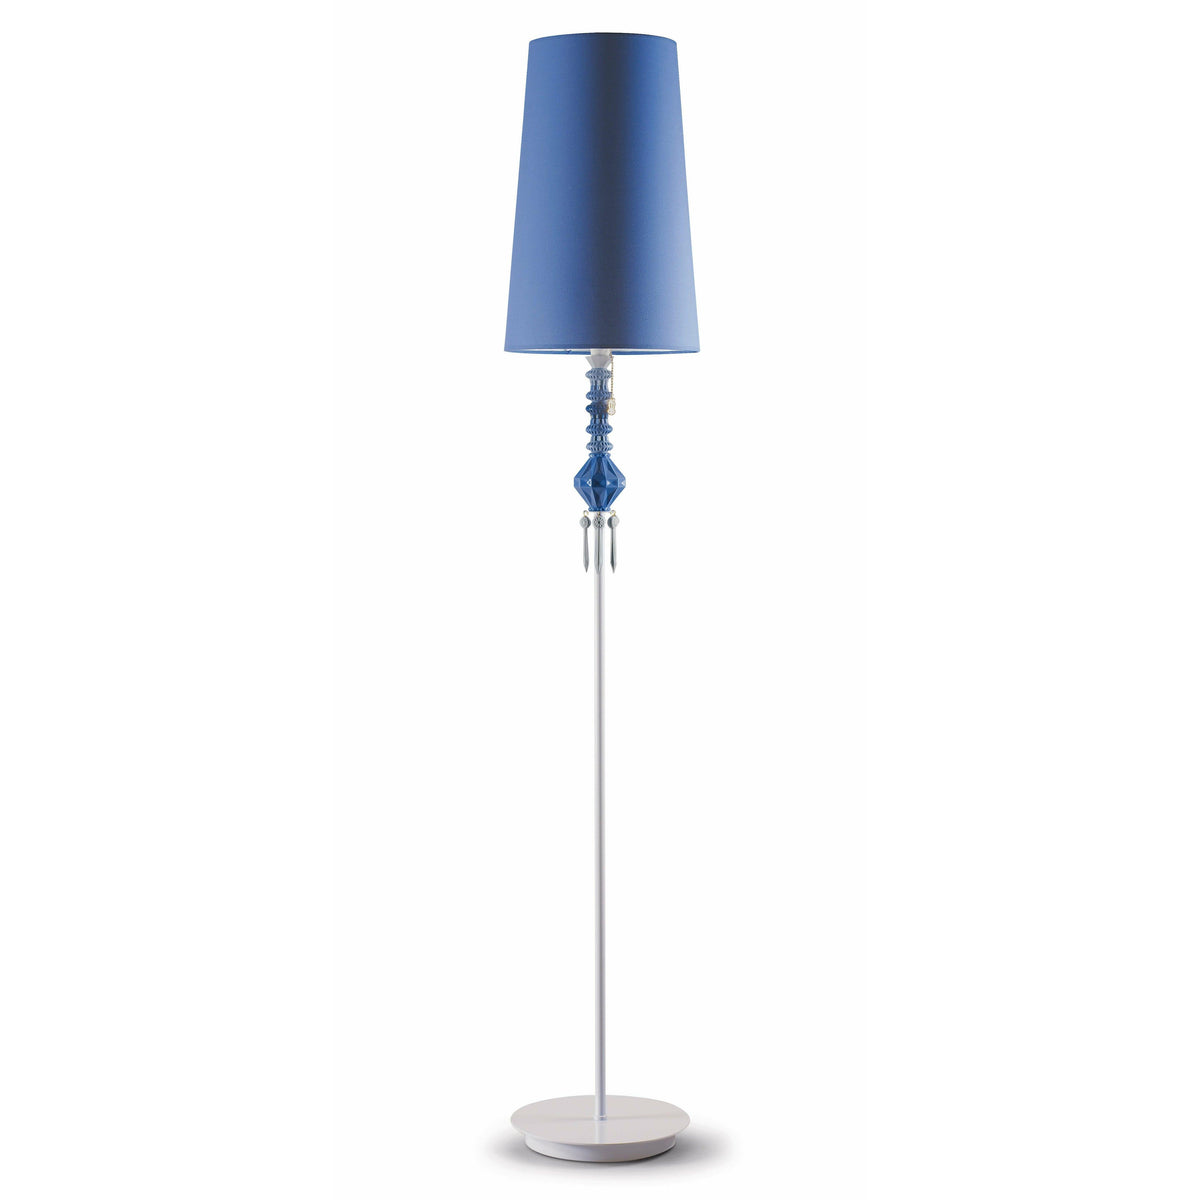 Lladro - Belle de Nuit Floor Lamp I - 01023405 | Montreal Lighting & Hardware